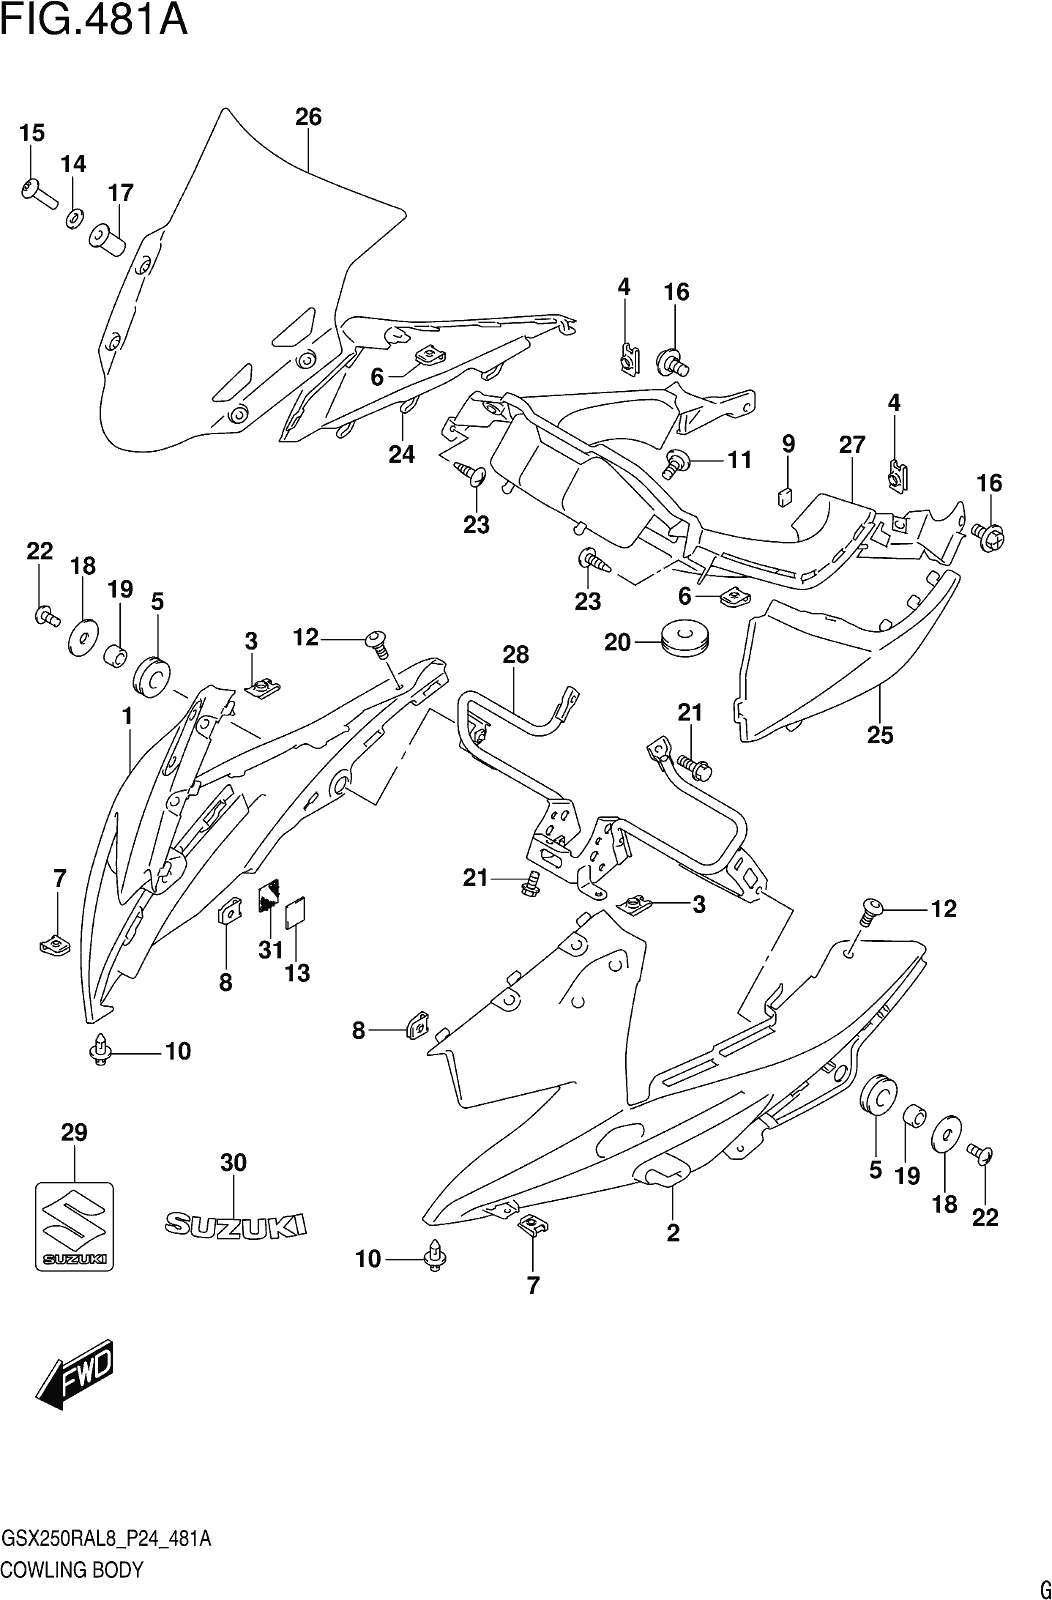 Fig.481a Cowling Body (gw250ral8 P24)